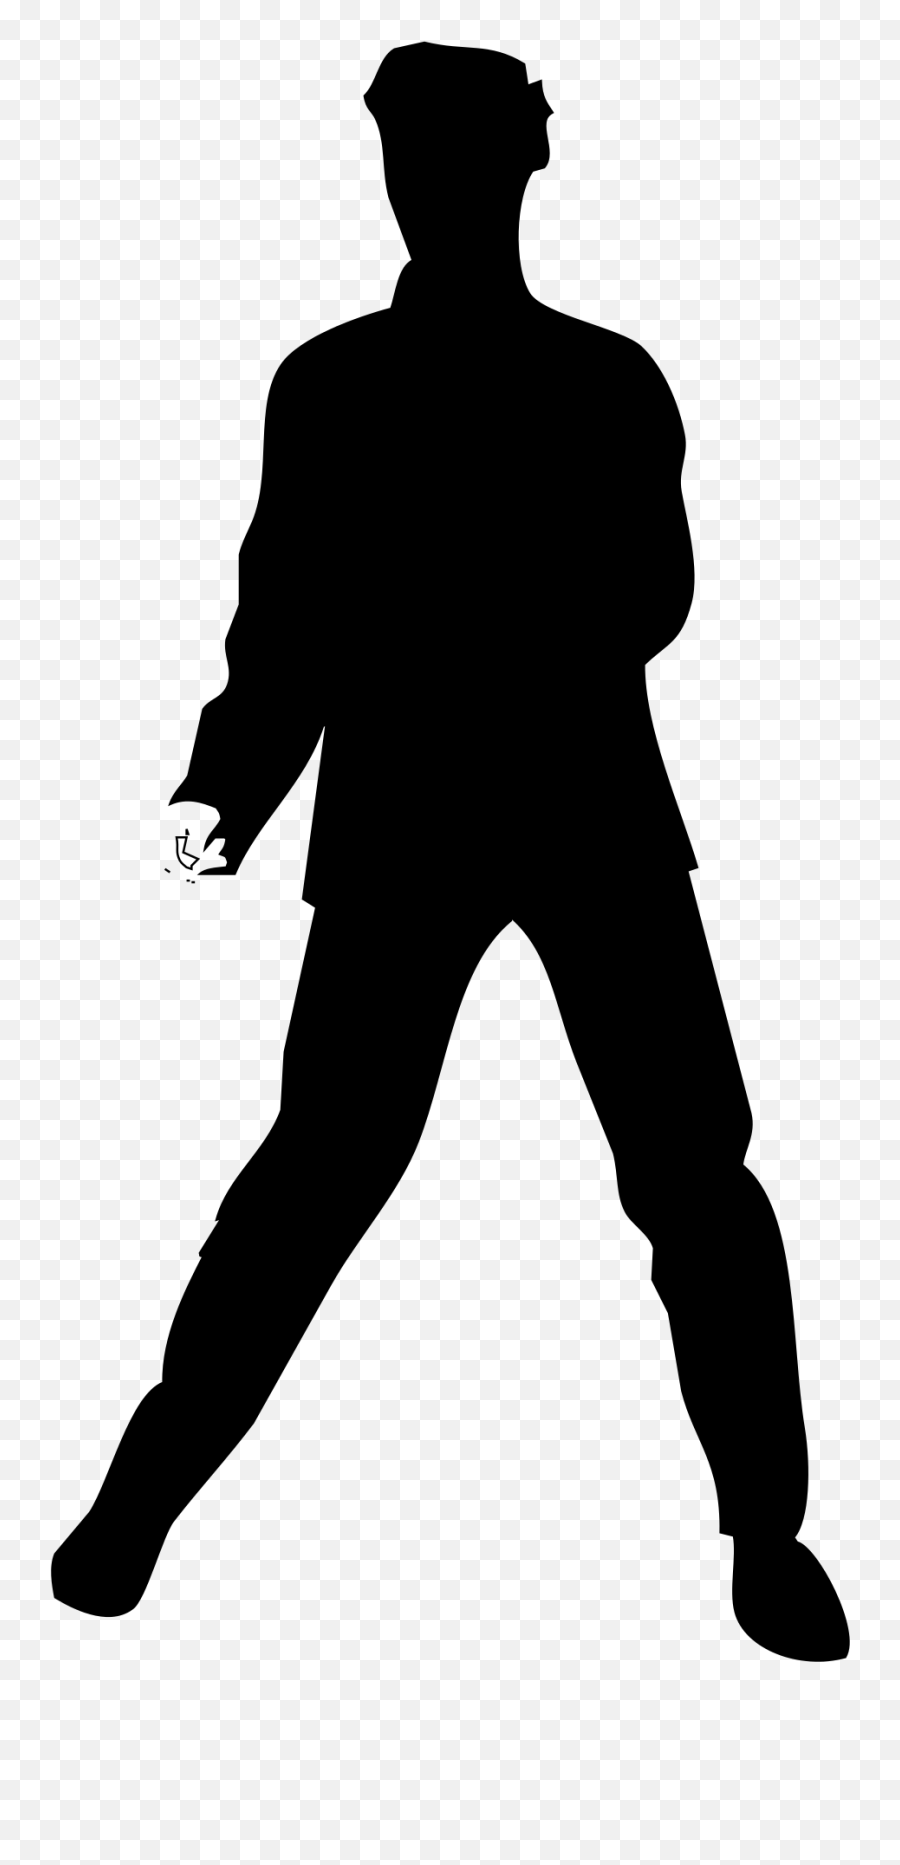 Elvis Silhouette Transparent - Elvis Presley Standing Silhouette Emoji,Elvis Emoji